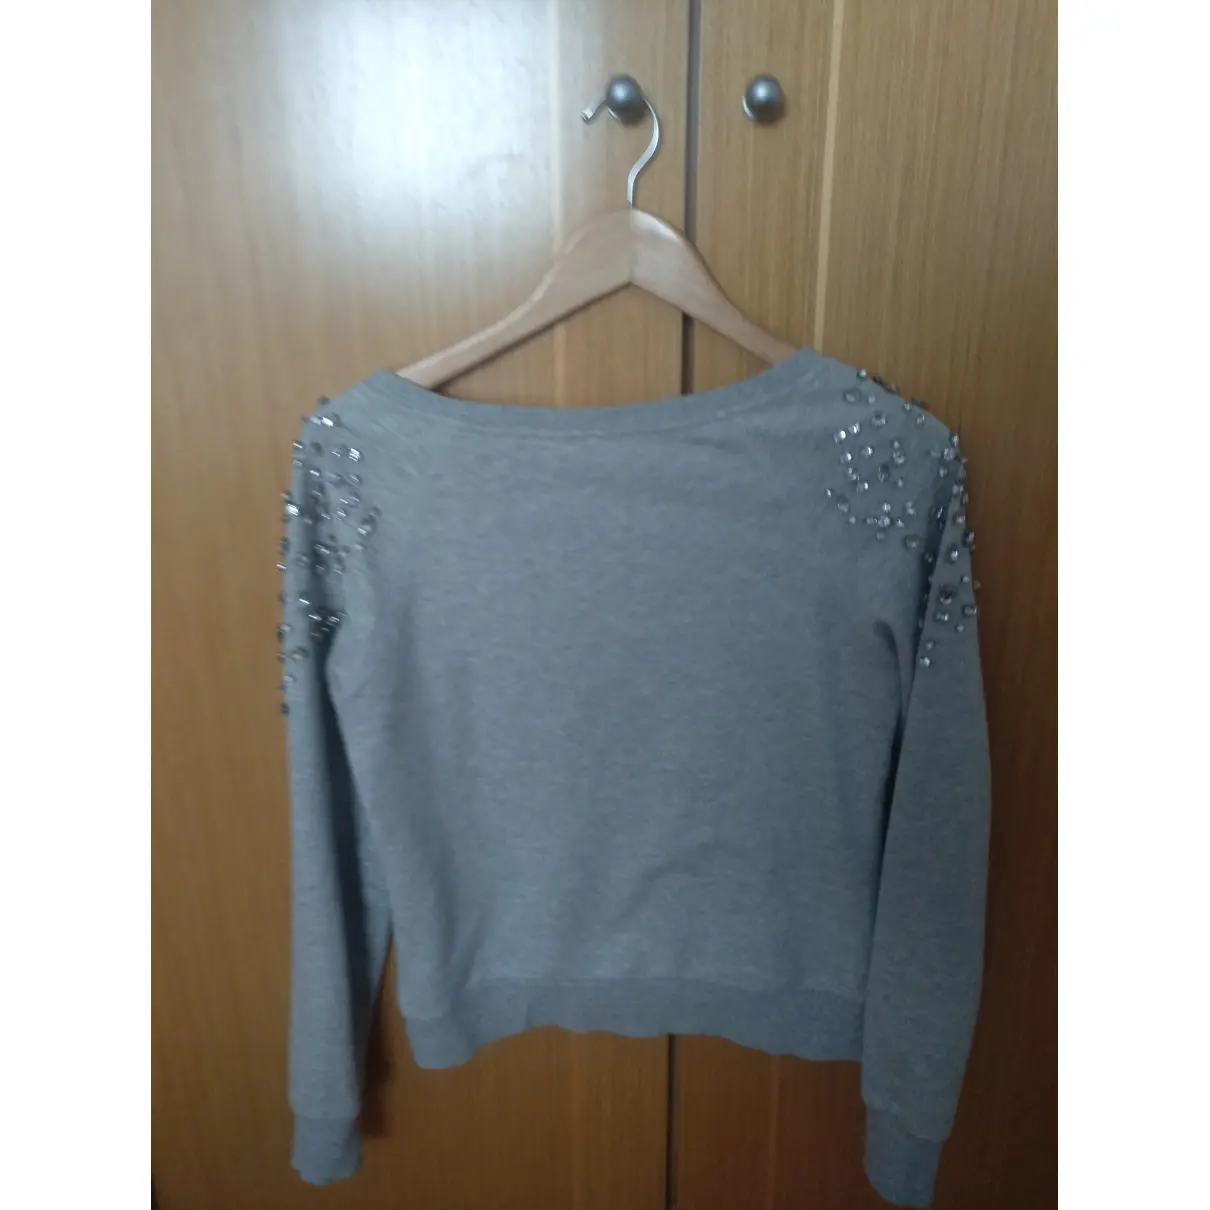 Buy GUESS Sweatshirt online